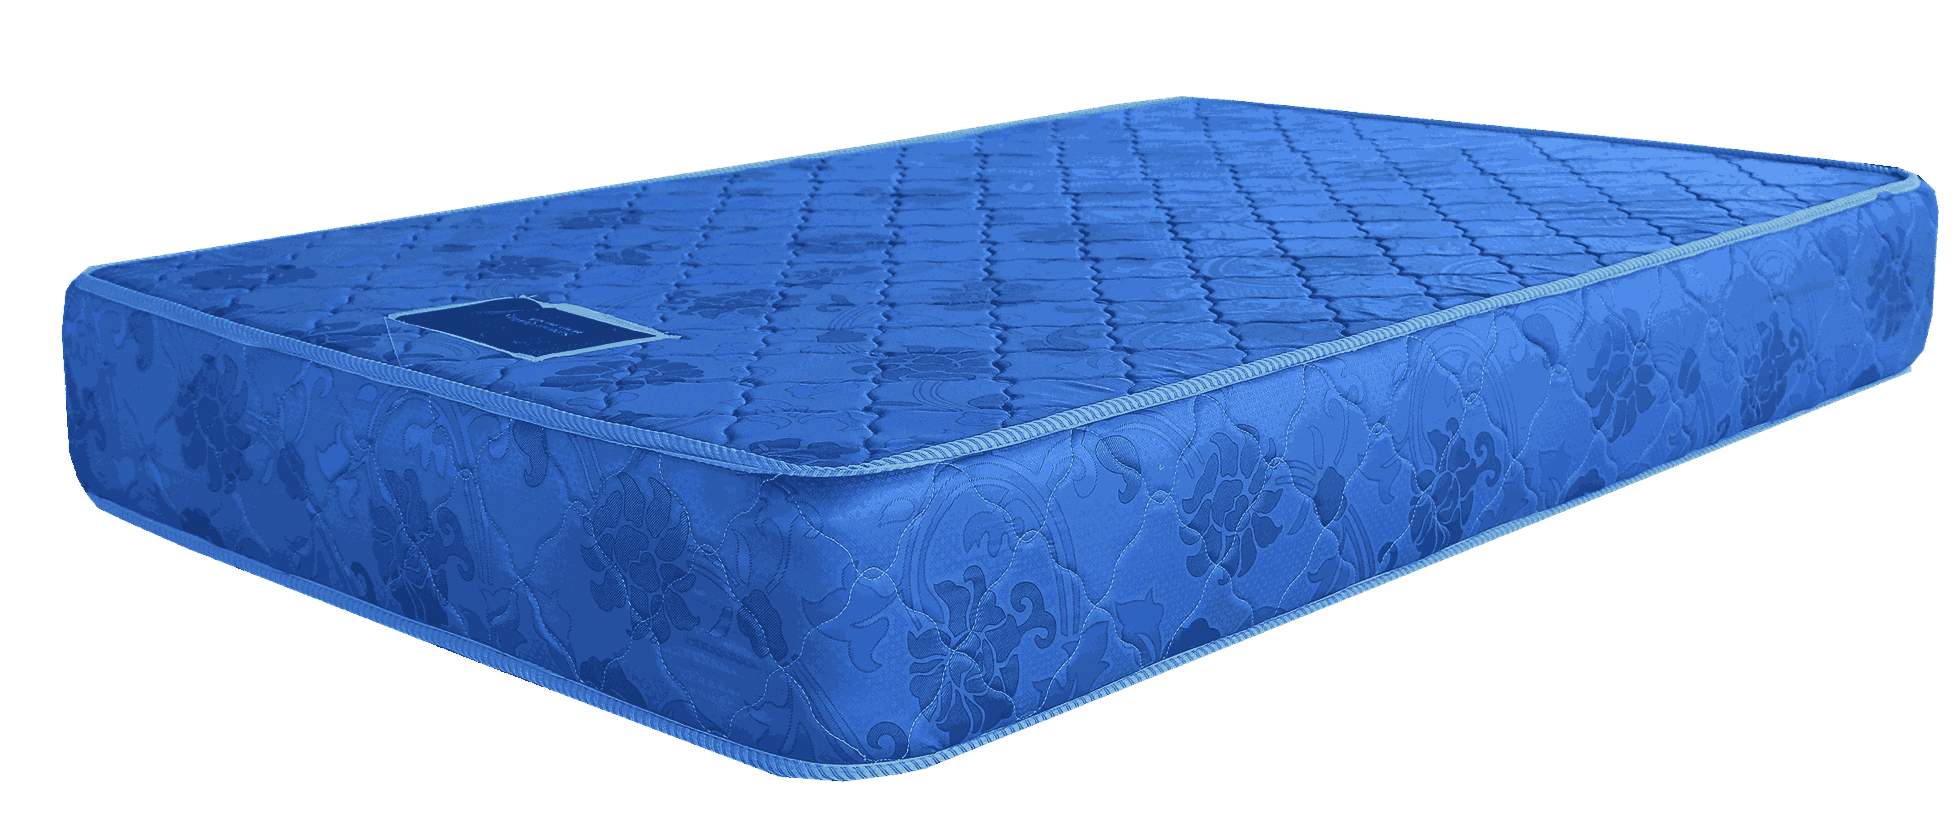 mattress price in ethiopia